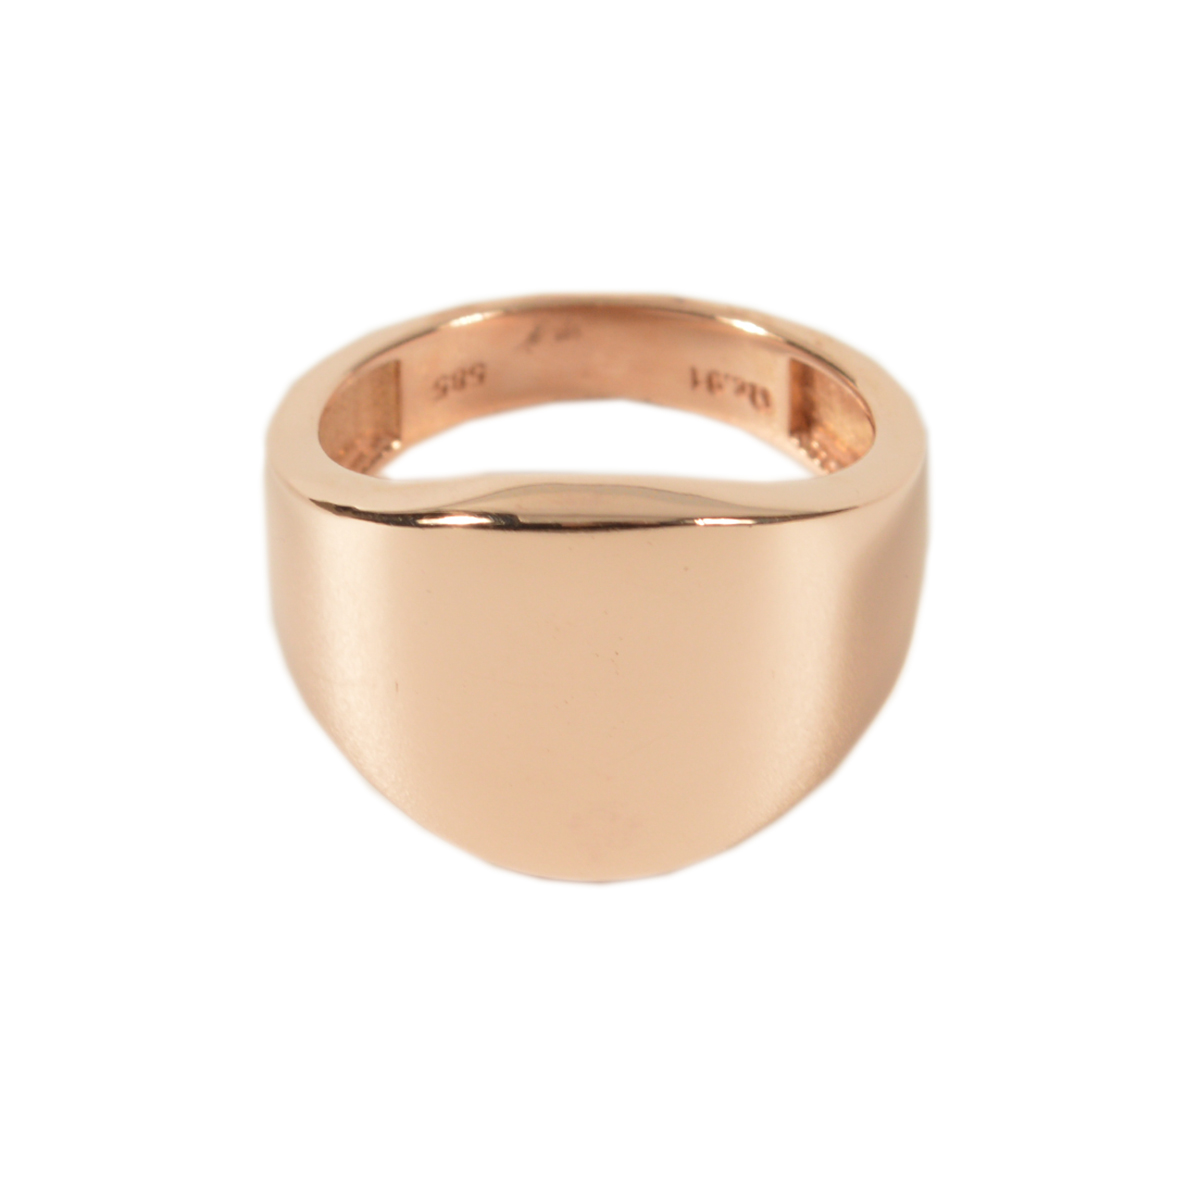 Δαχτυλίδι Σεβαλιέ Ροζ Χρυσό